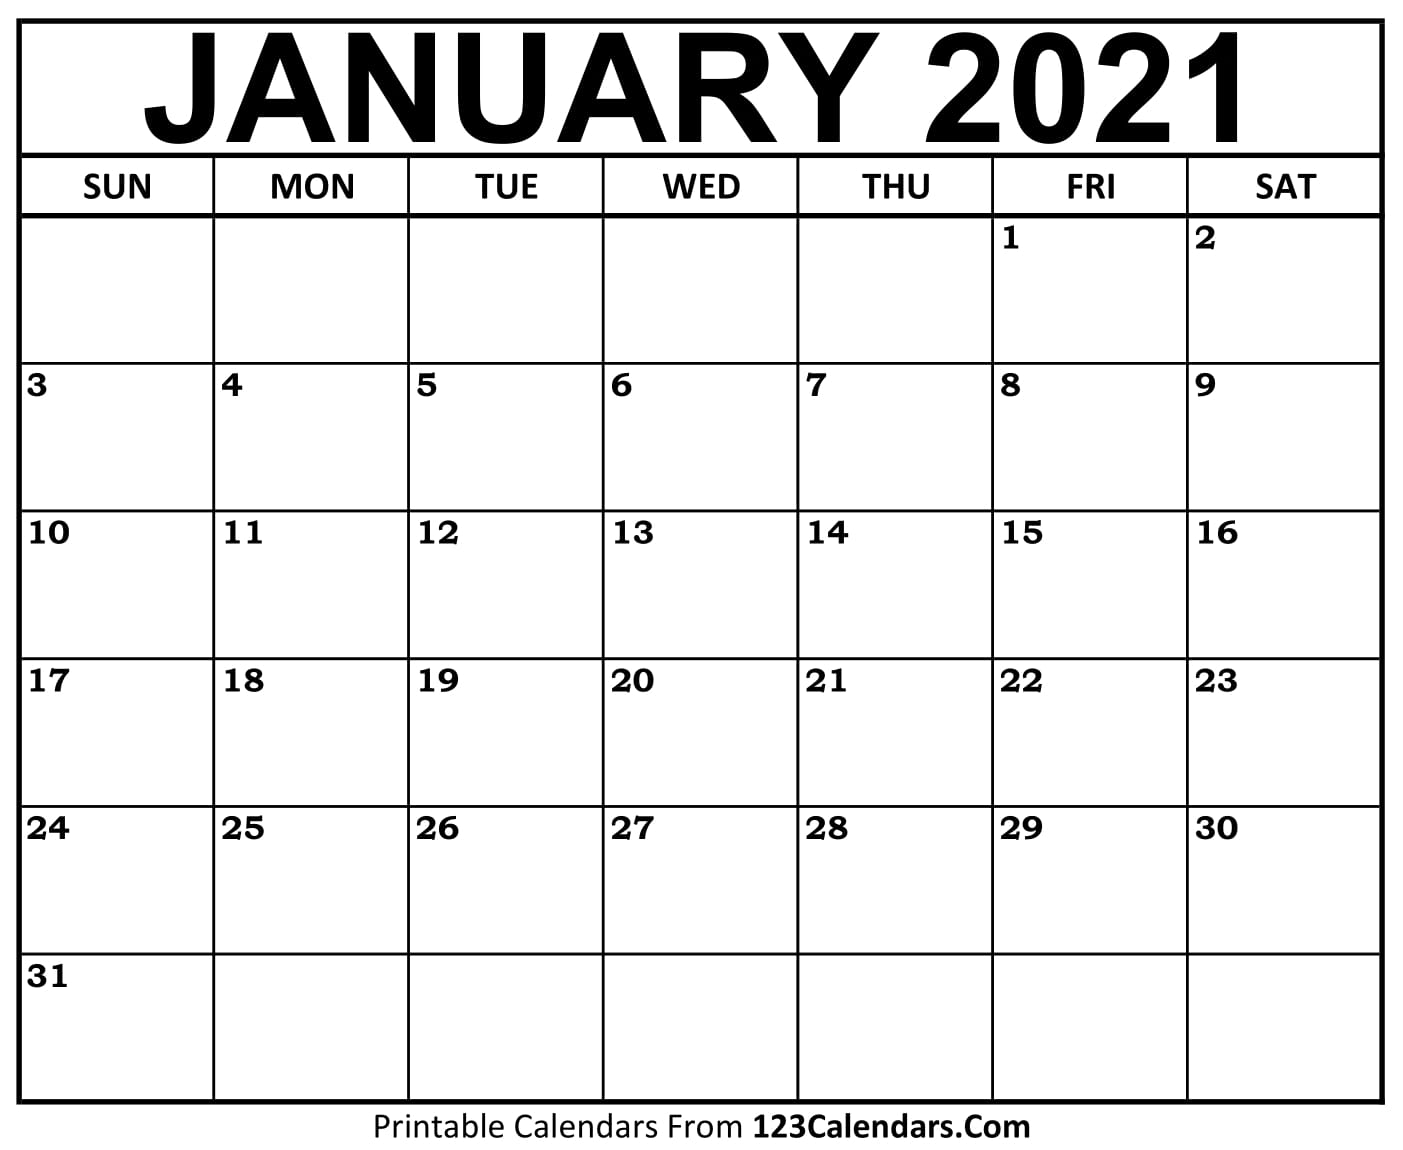 Printable January 2021 Calendar Templates 123calendars Com